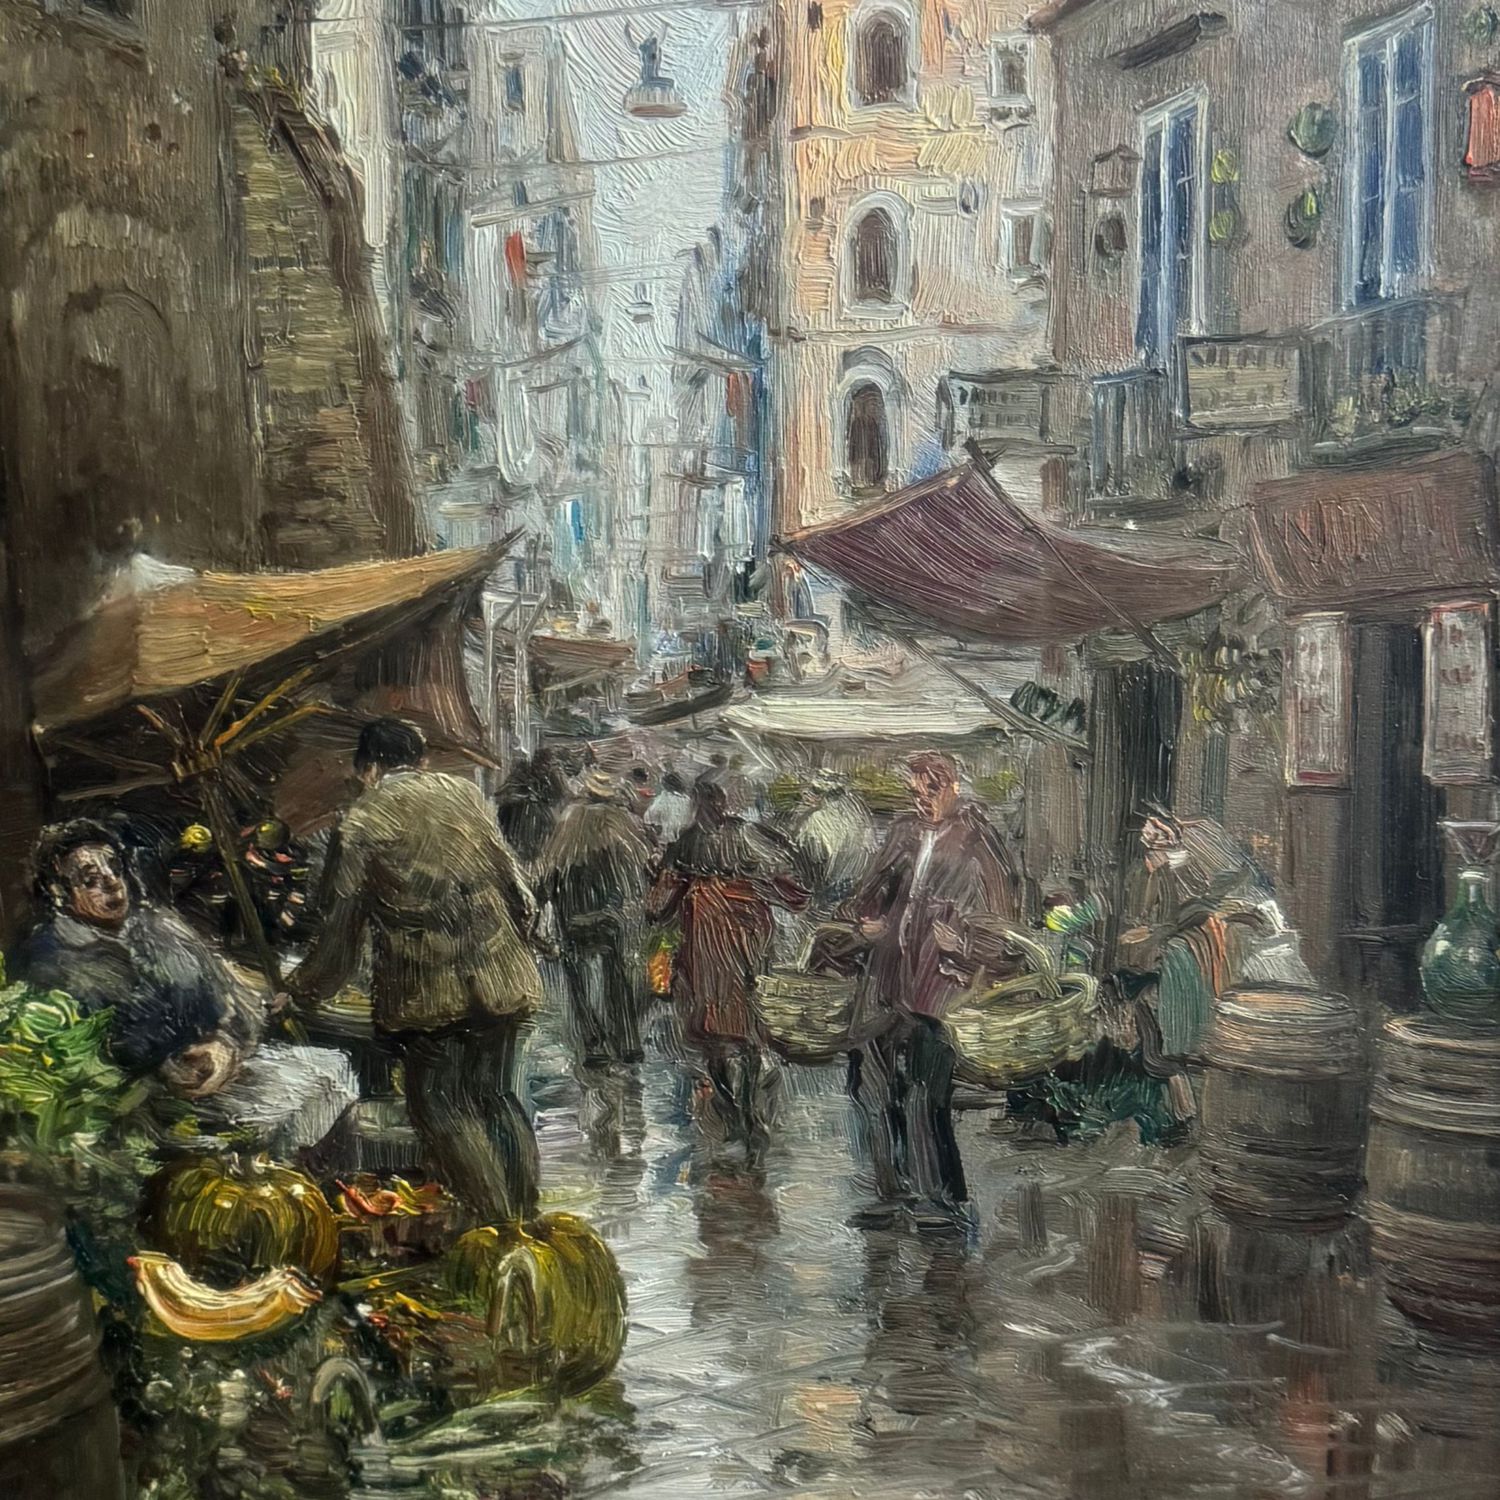 The market of Antignano - A. Martucci - Image 3 of 6